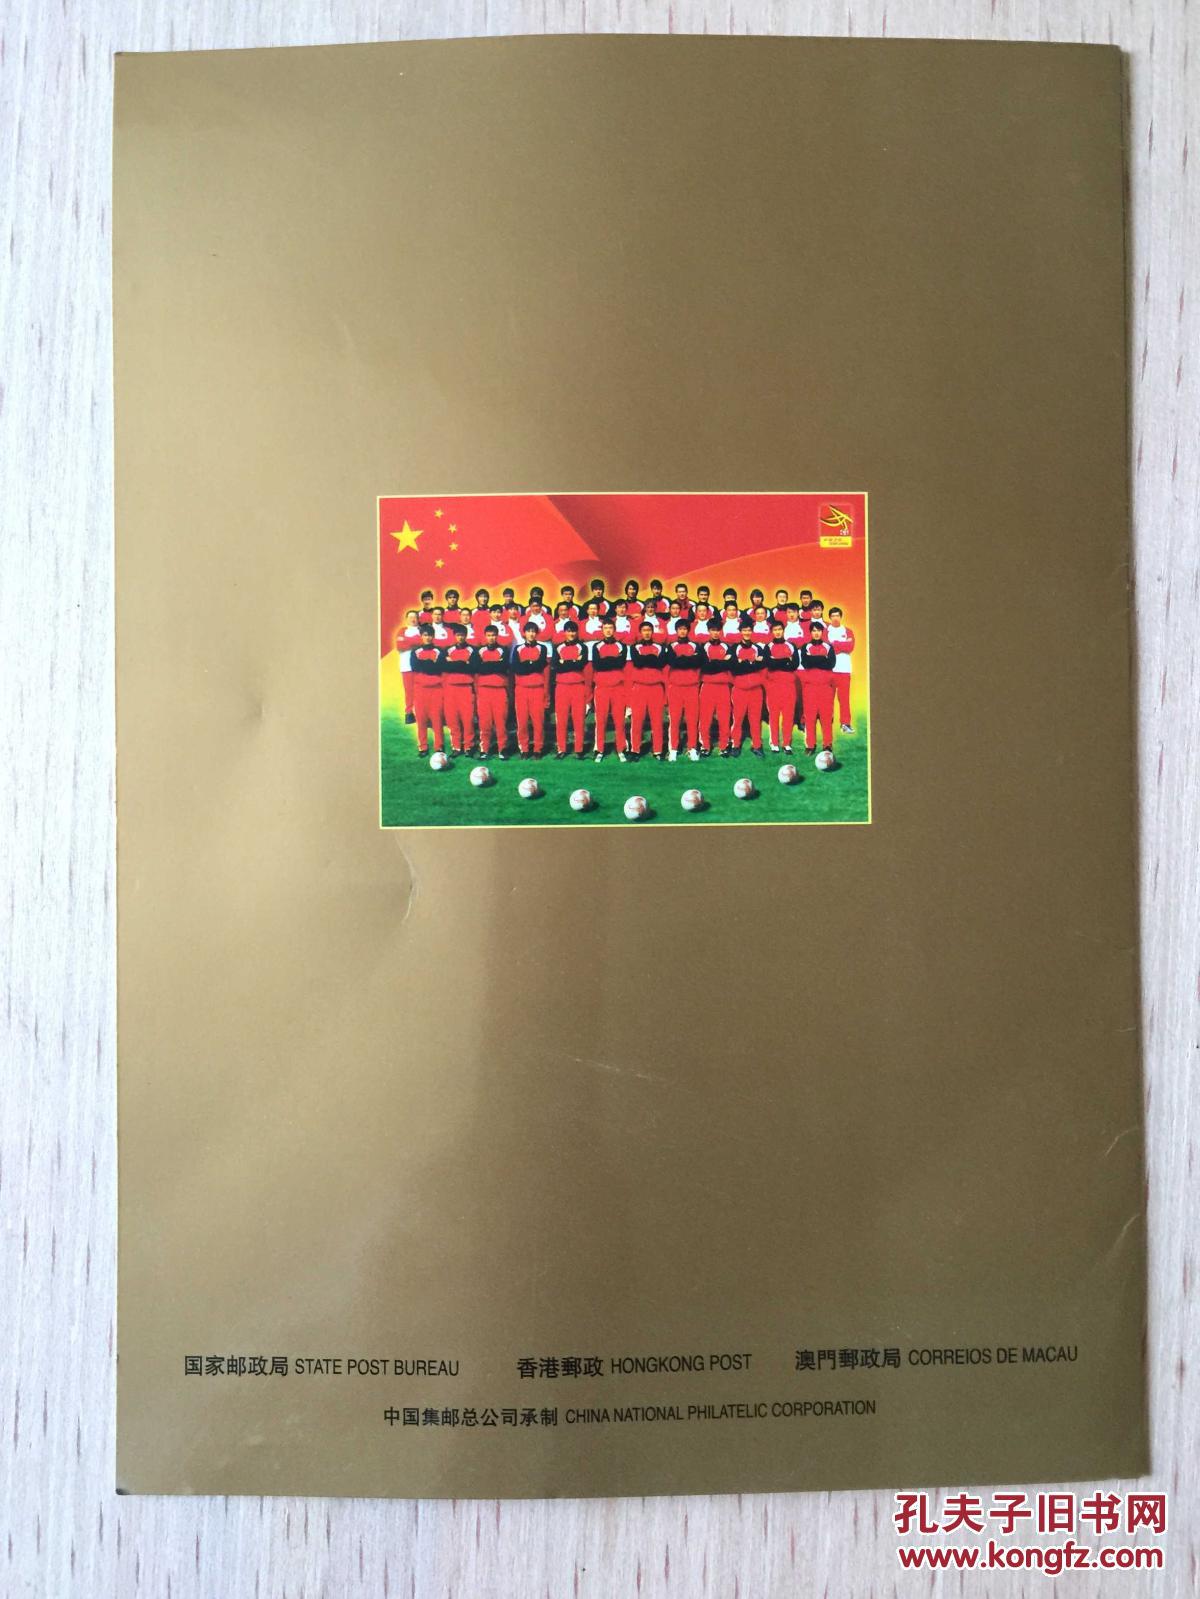 【图】中国队参加2002年世界杯足球赛纪念(小